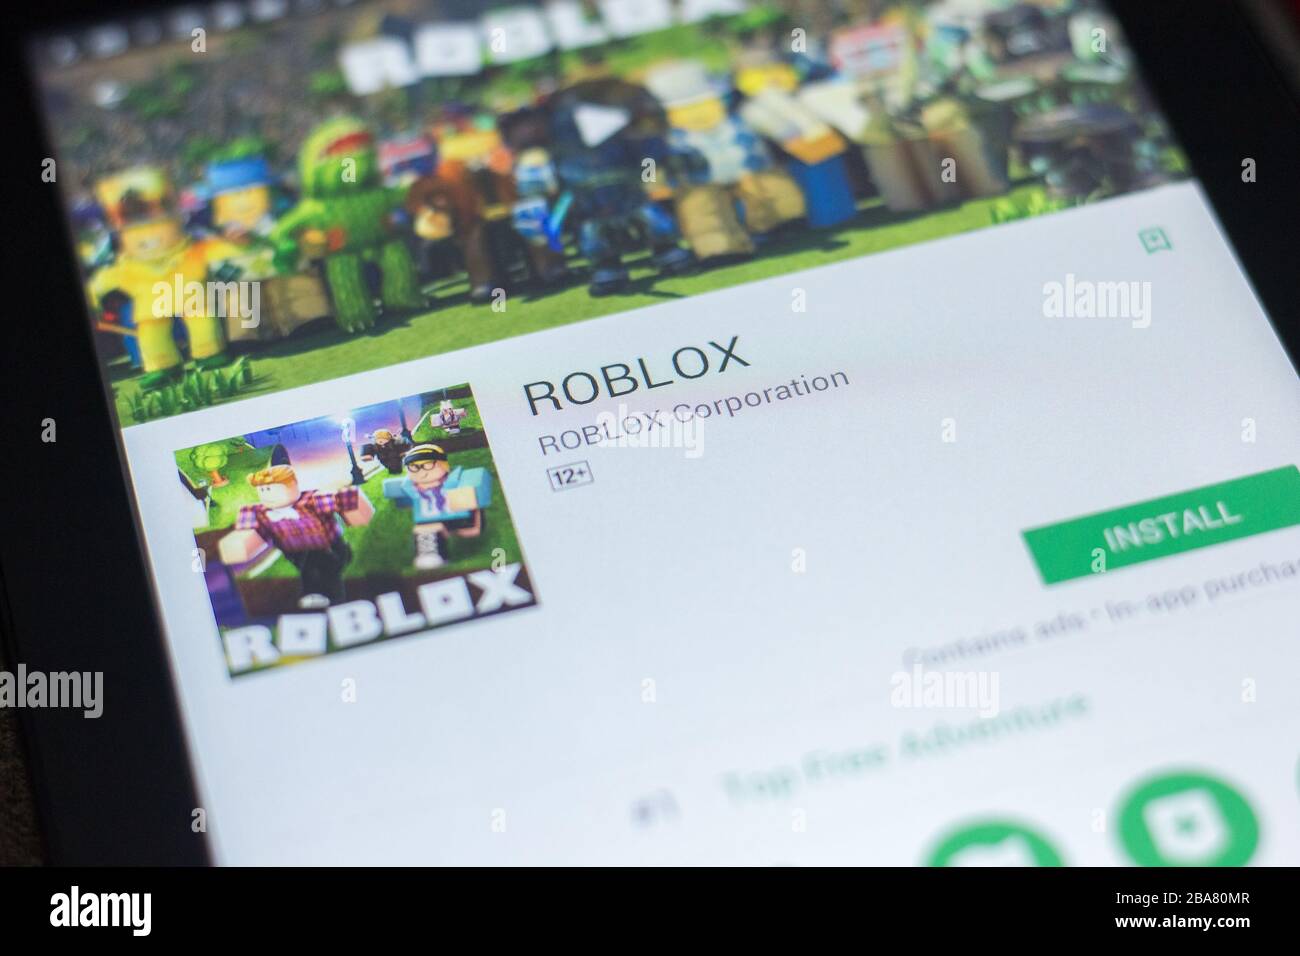 Roblox Pc Best Roblox Games Top Ten User Created Games Rock Paper - robux comment obtenir robux gratuitement 2019 pour android telechargez l apk